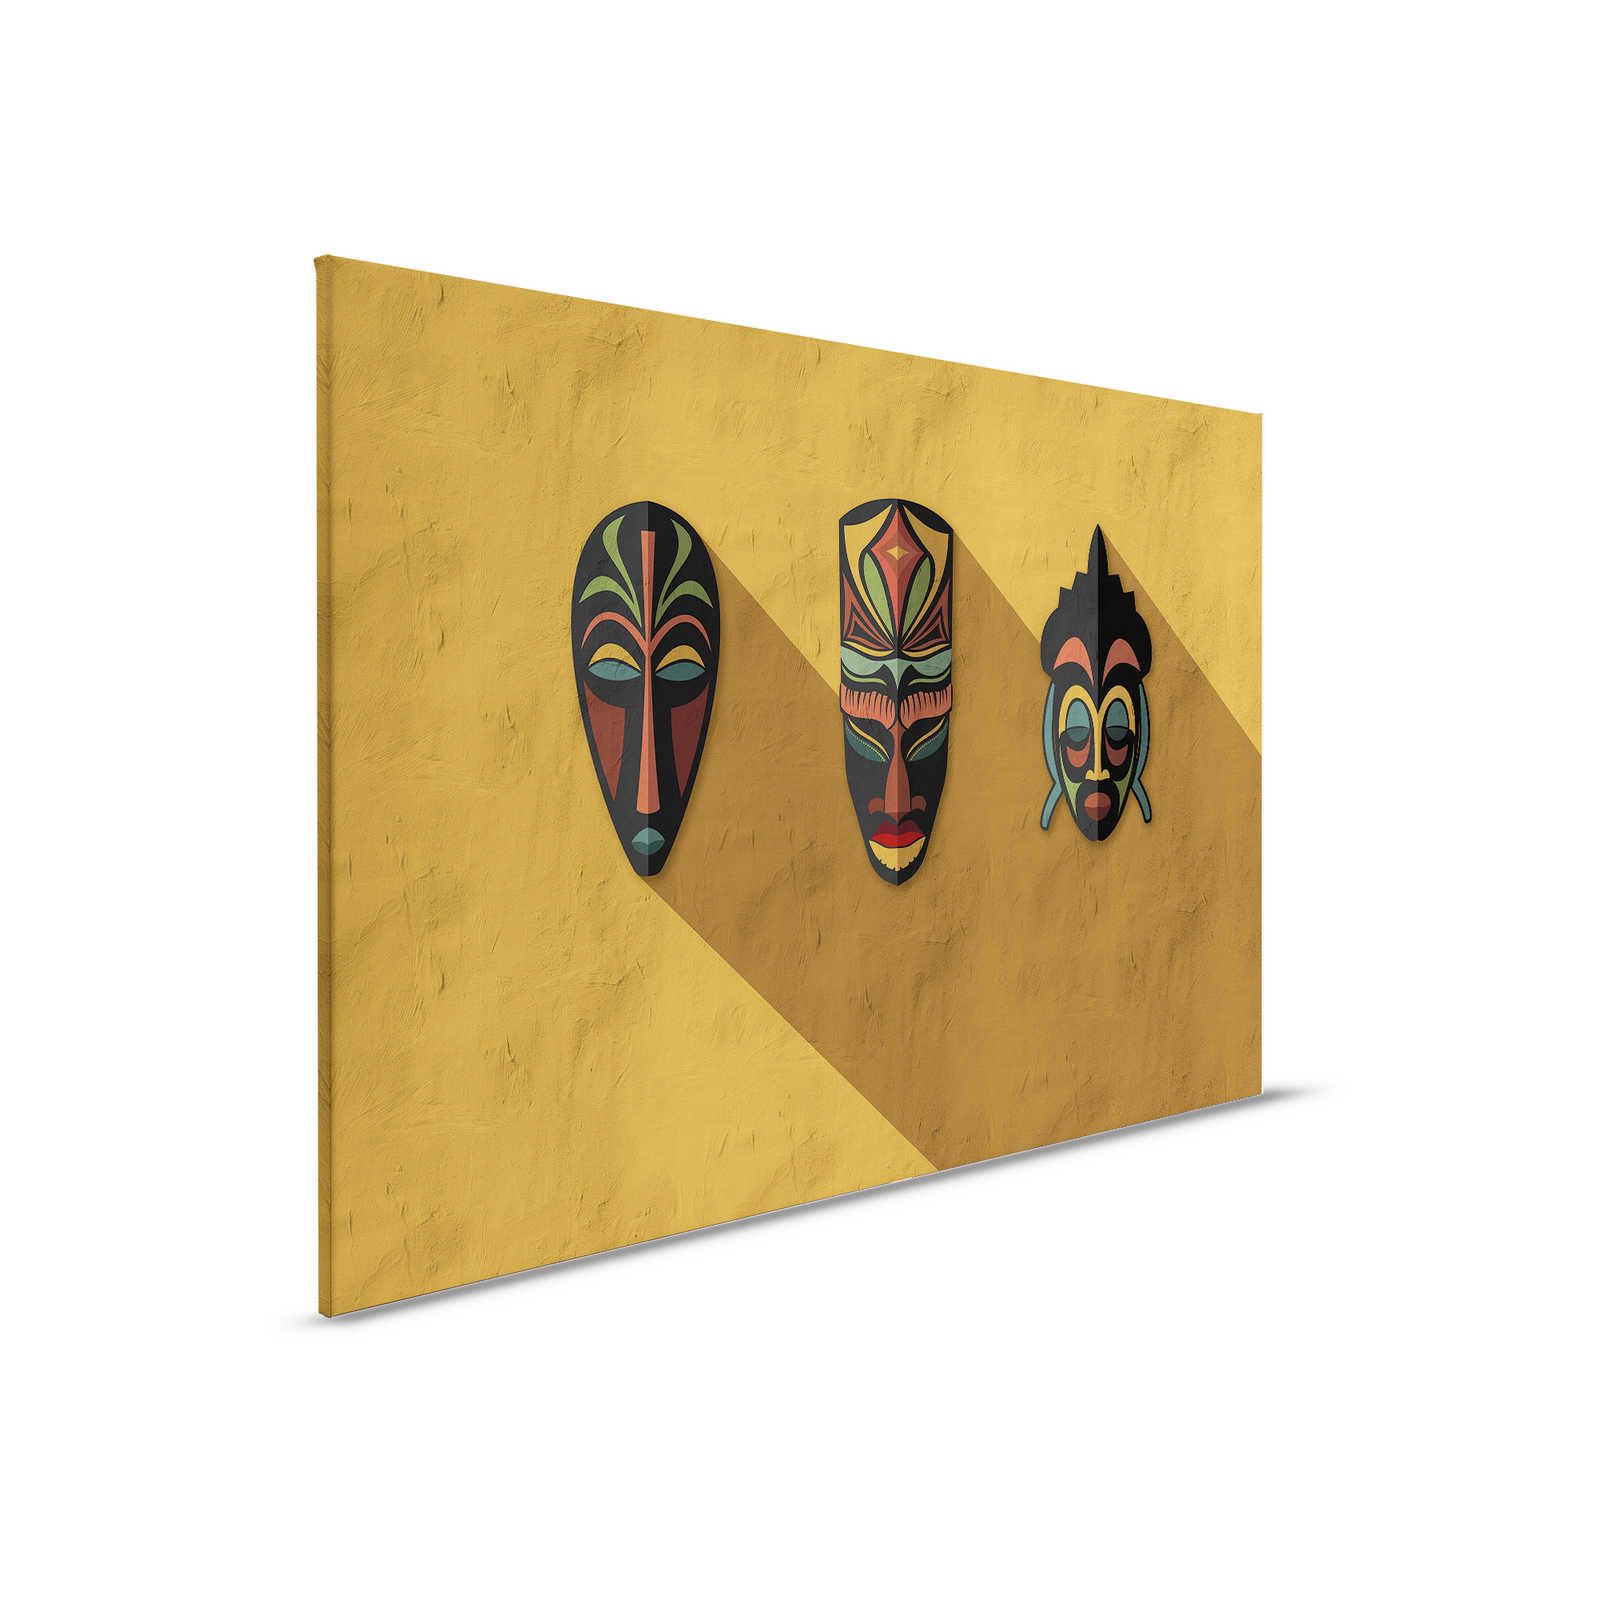         Zulu 1 - Canvas painting Mustard Yellow, Africa Masks Zulu Design - 0.90 m x 0.60 m
    